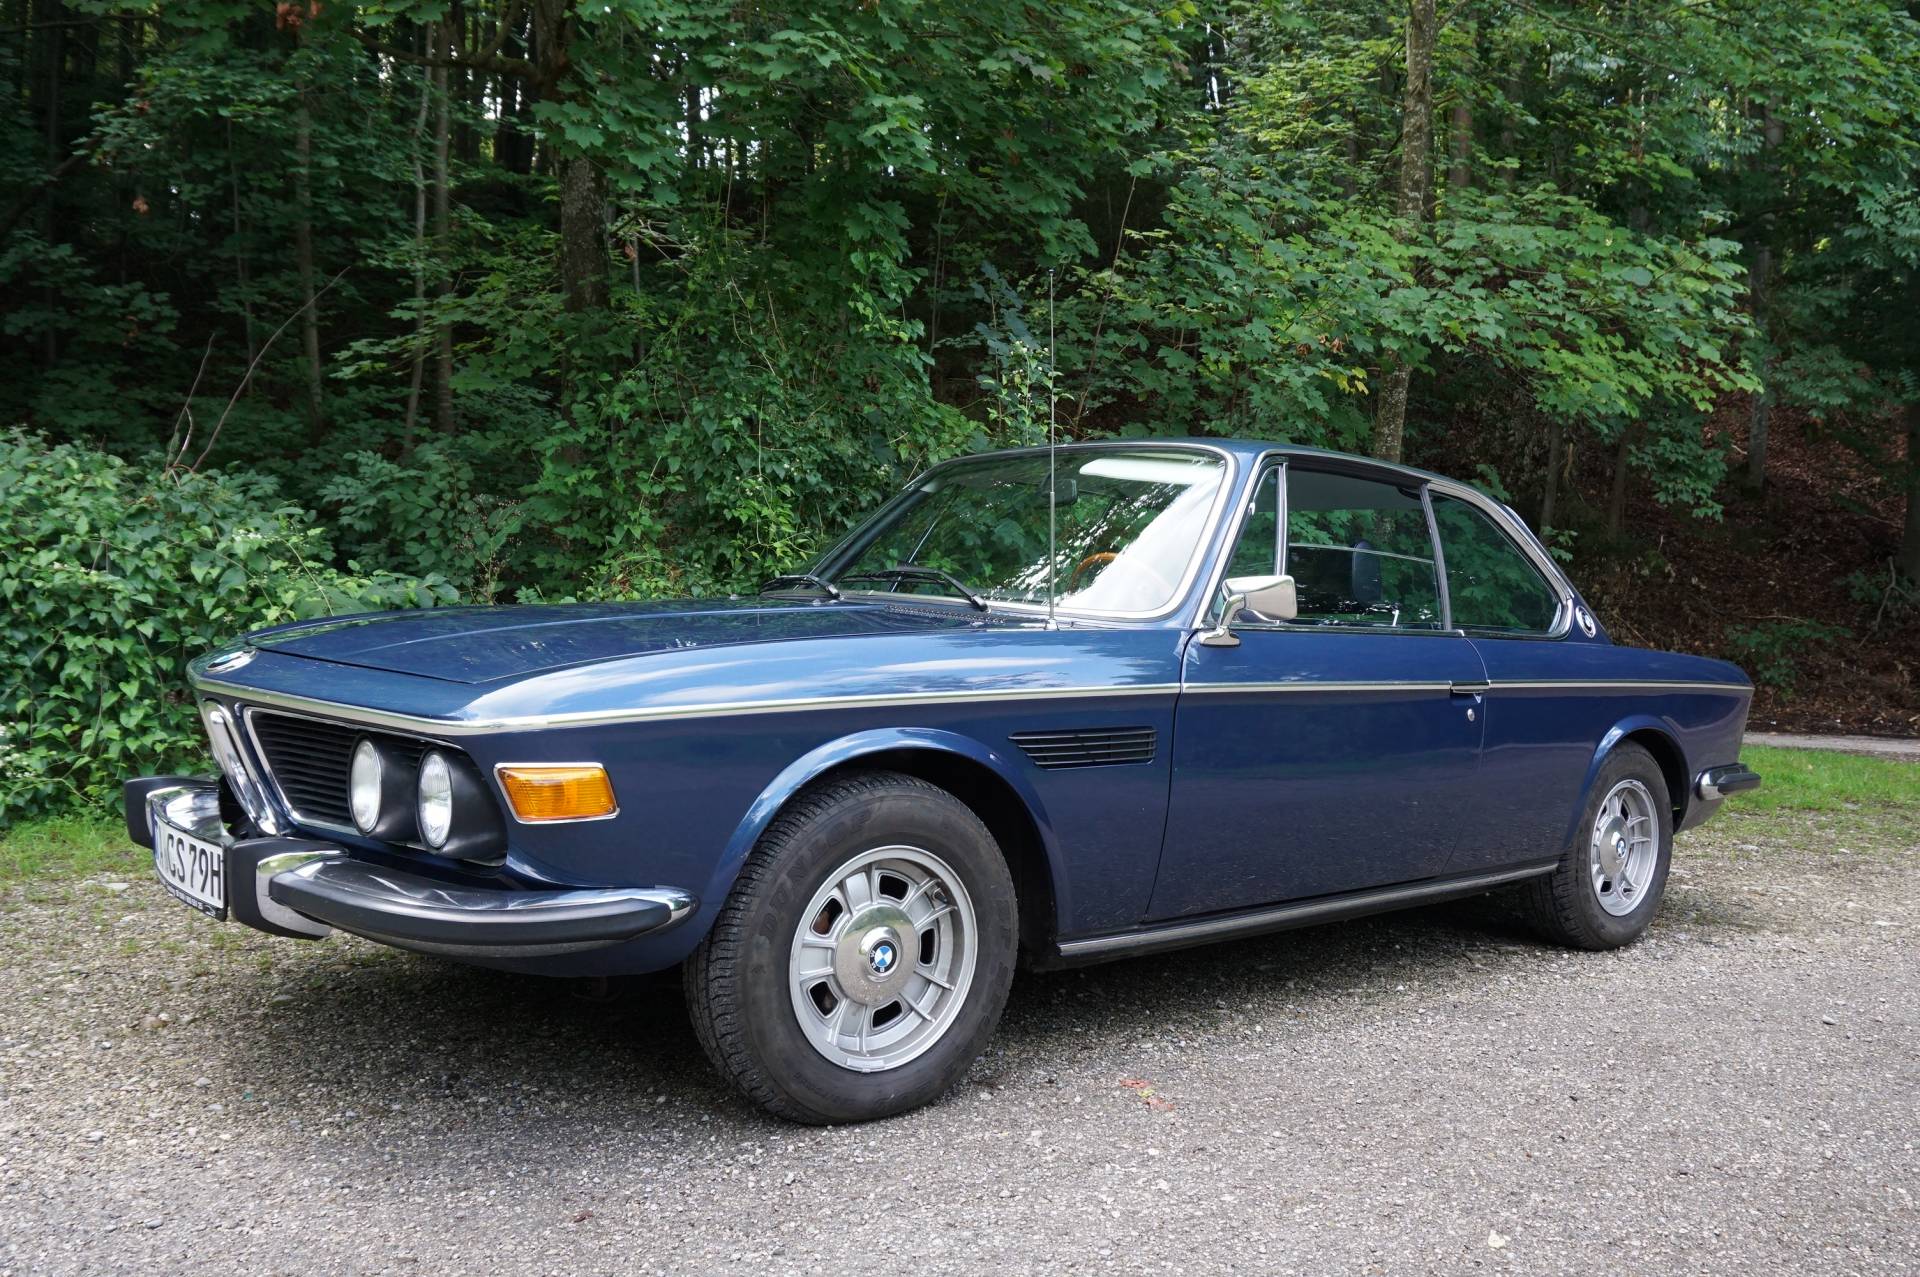 BMW 3.0 CSi (1973) für 72.351 EUR kaufen